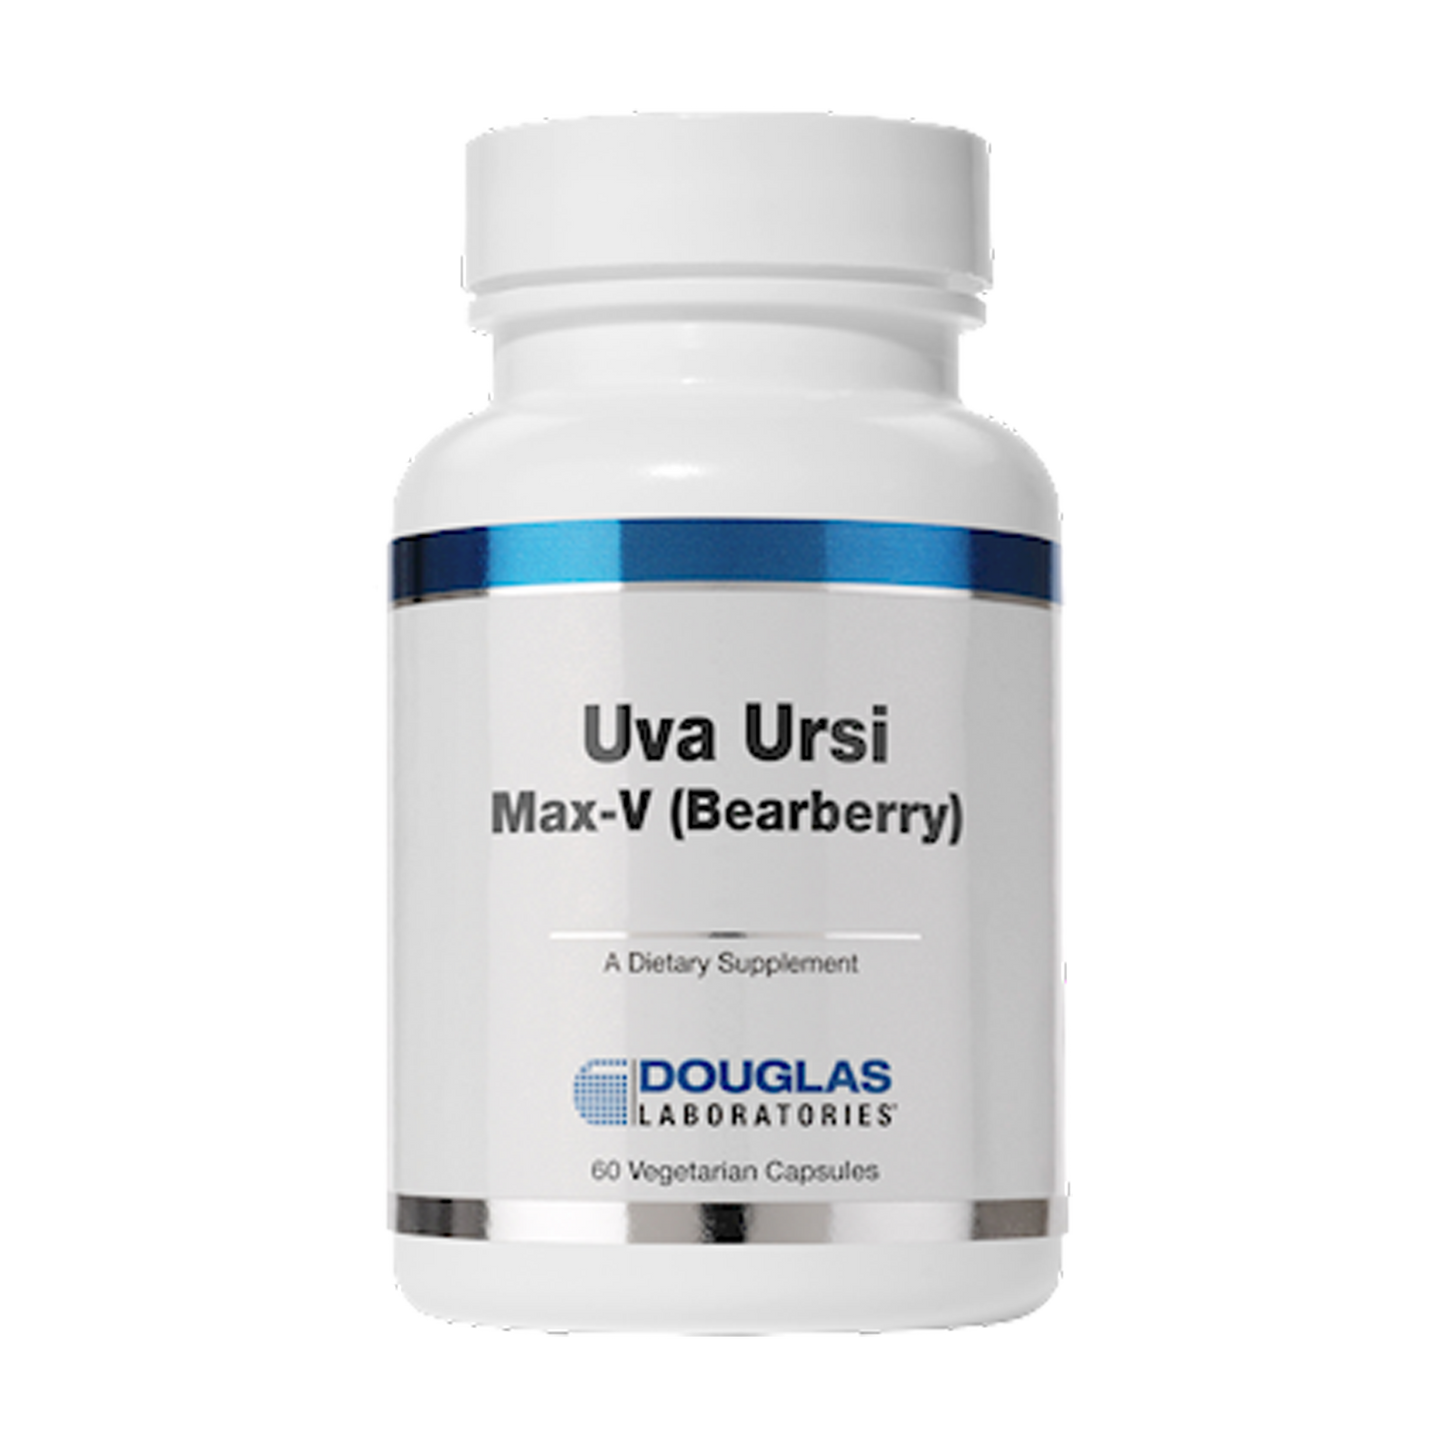 UVA URSI MAX-V (Bearberry)